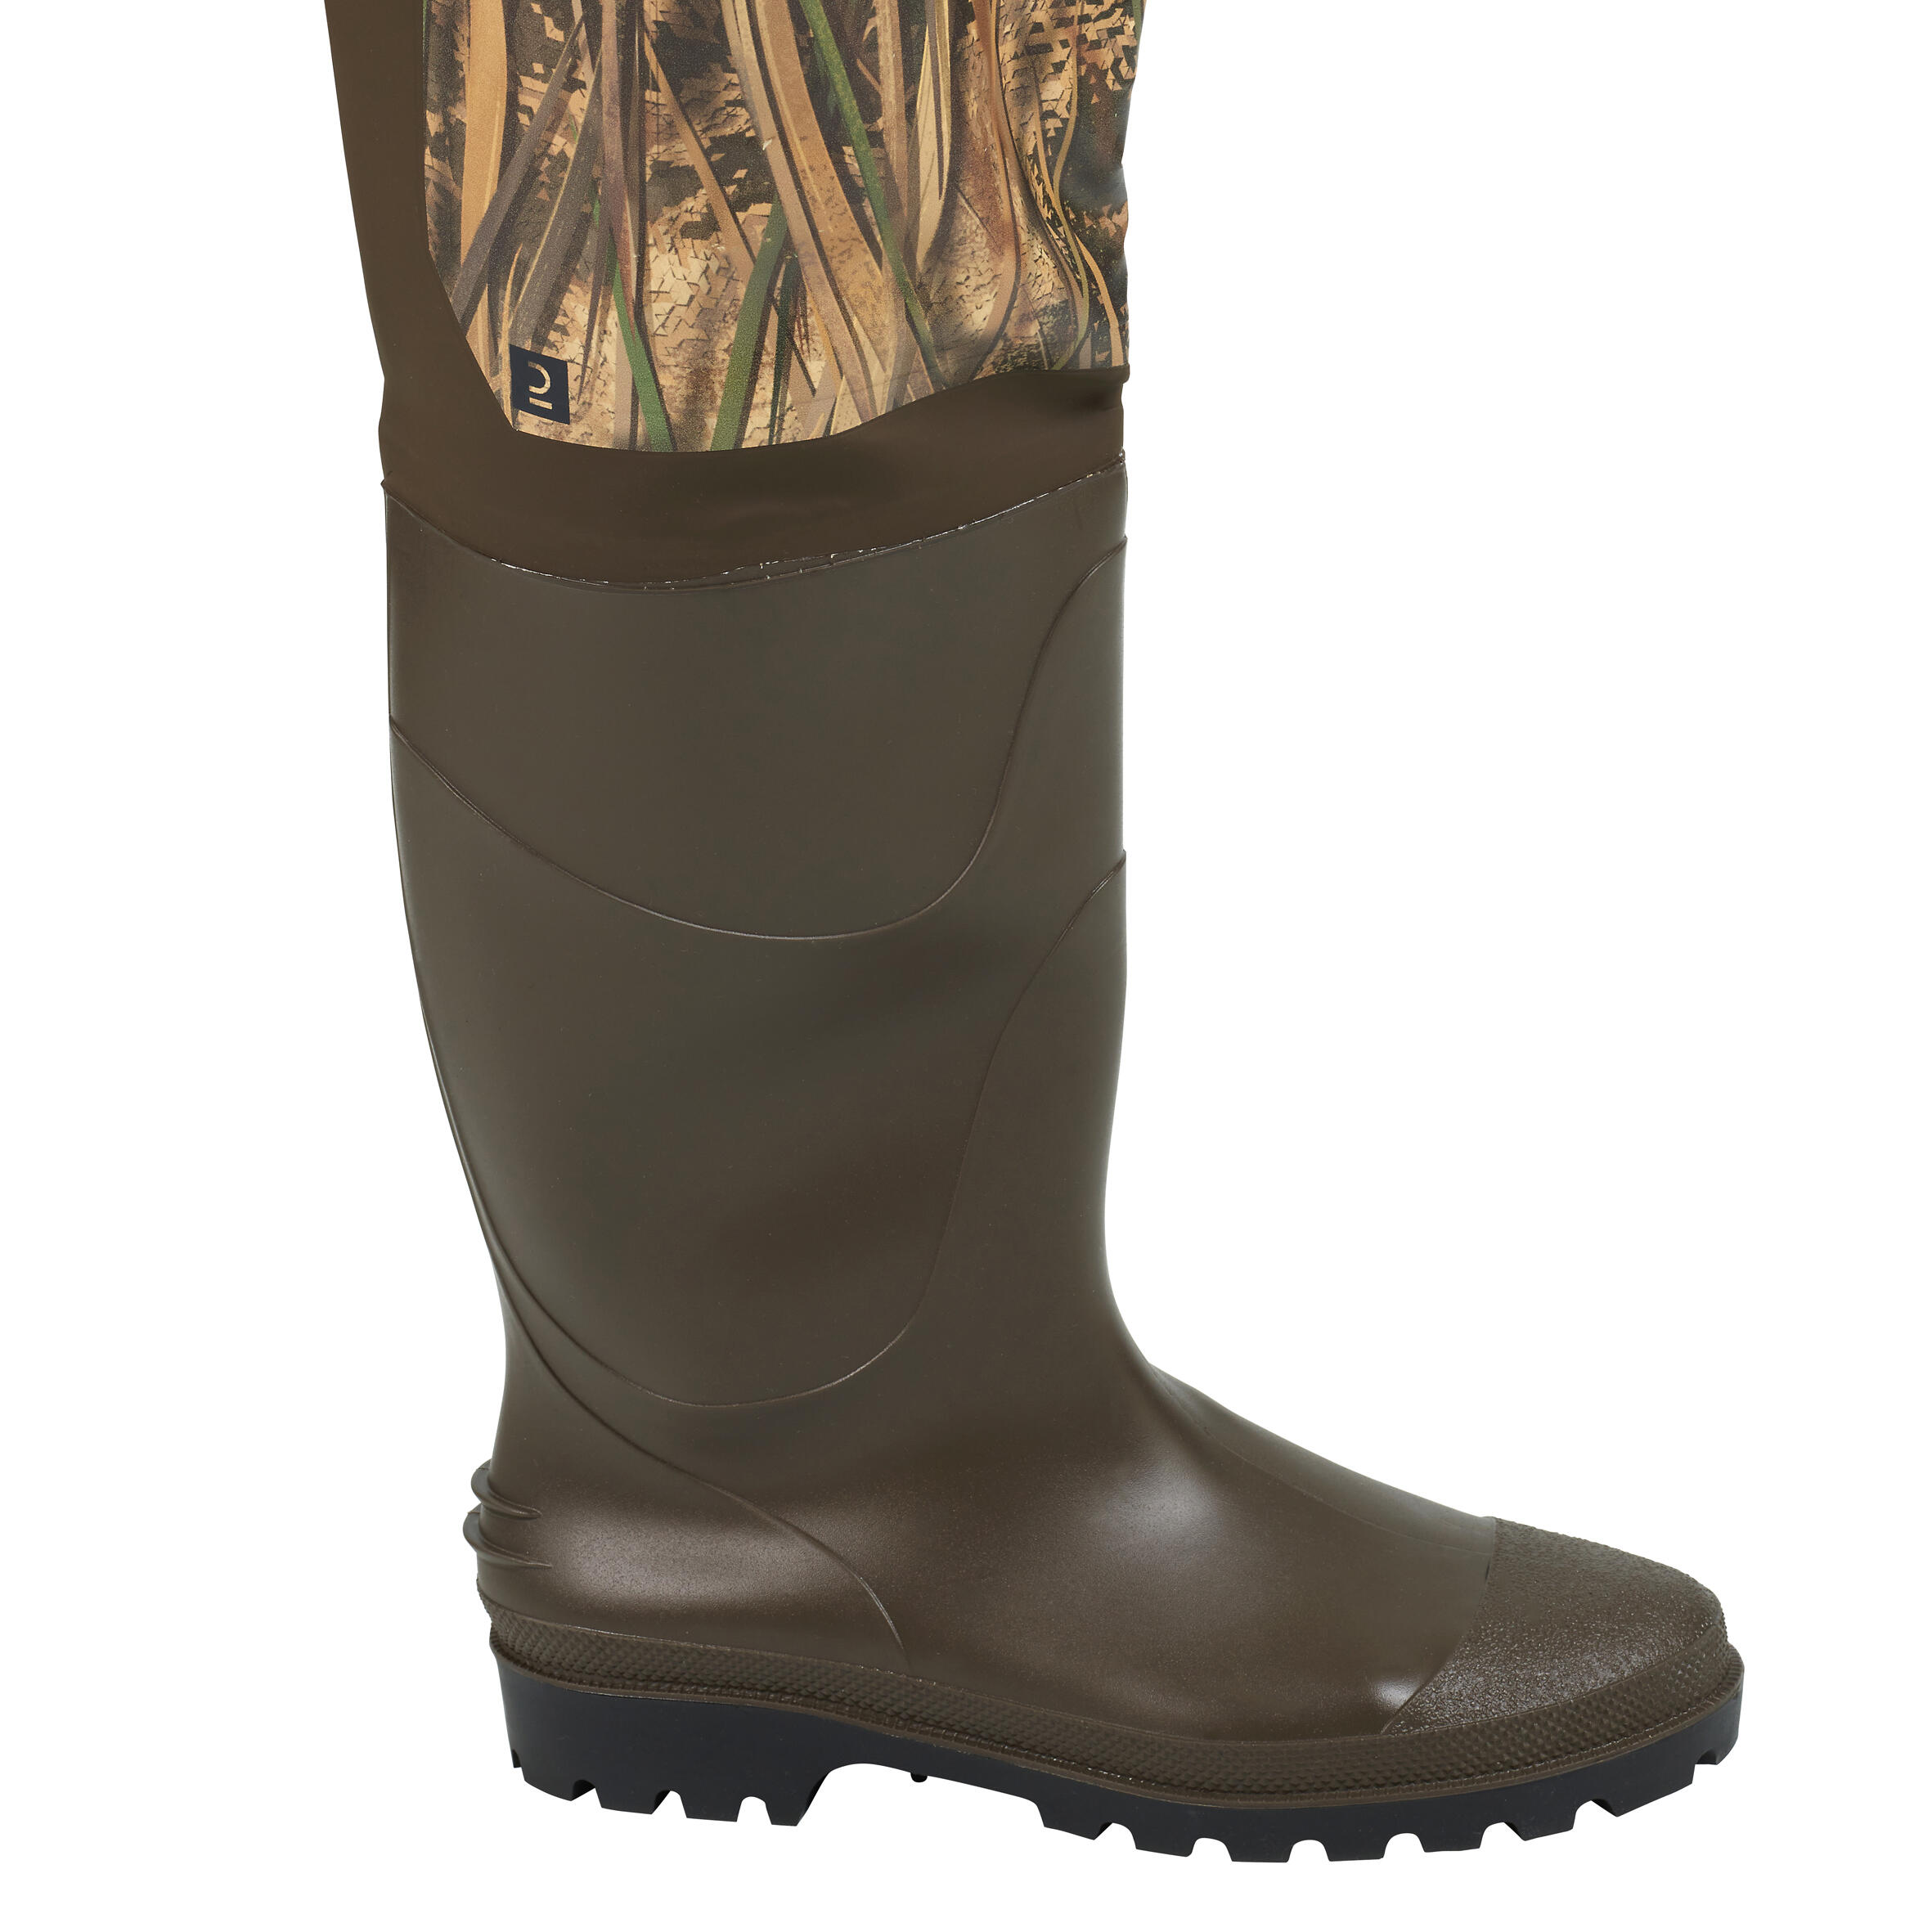 Bottes-pantalon de chasse - 520 camouflage marais - SOLOGNAC